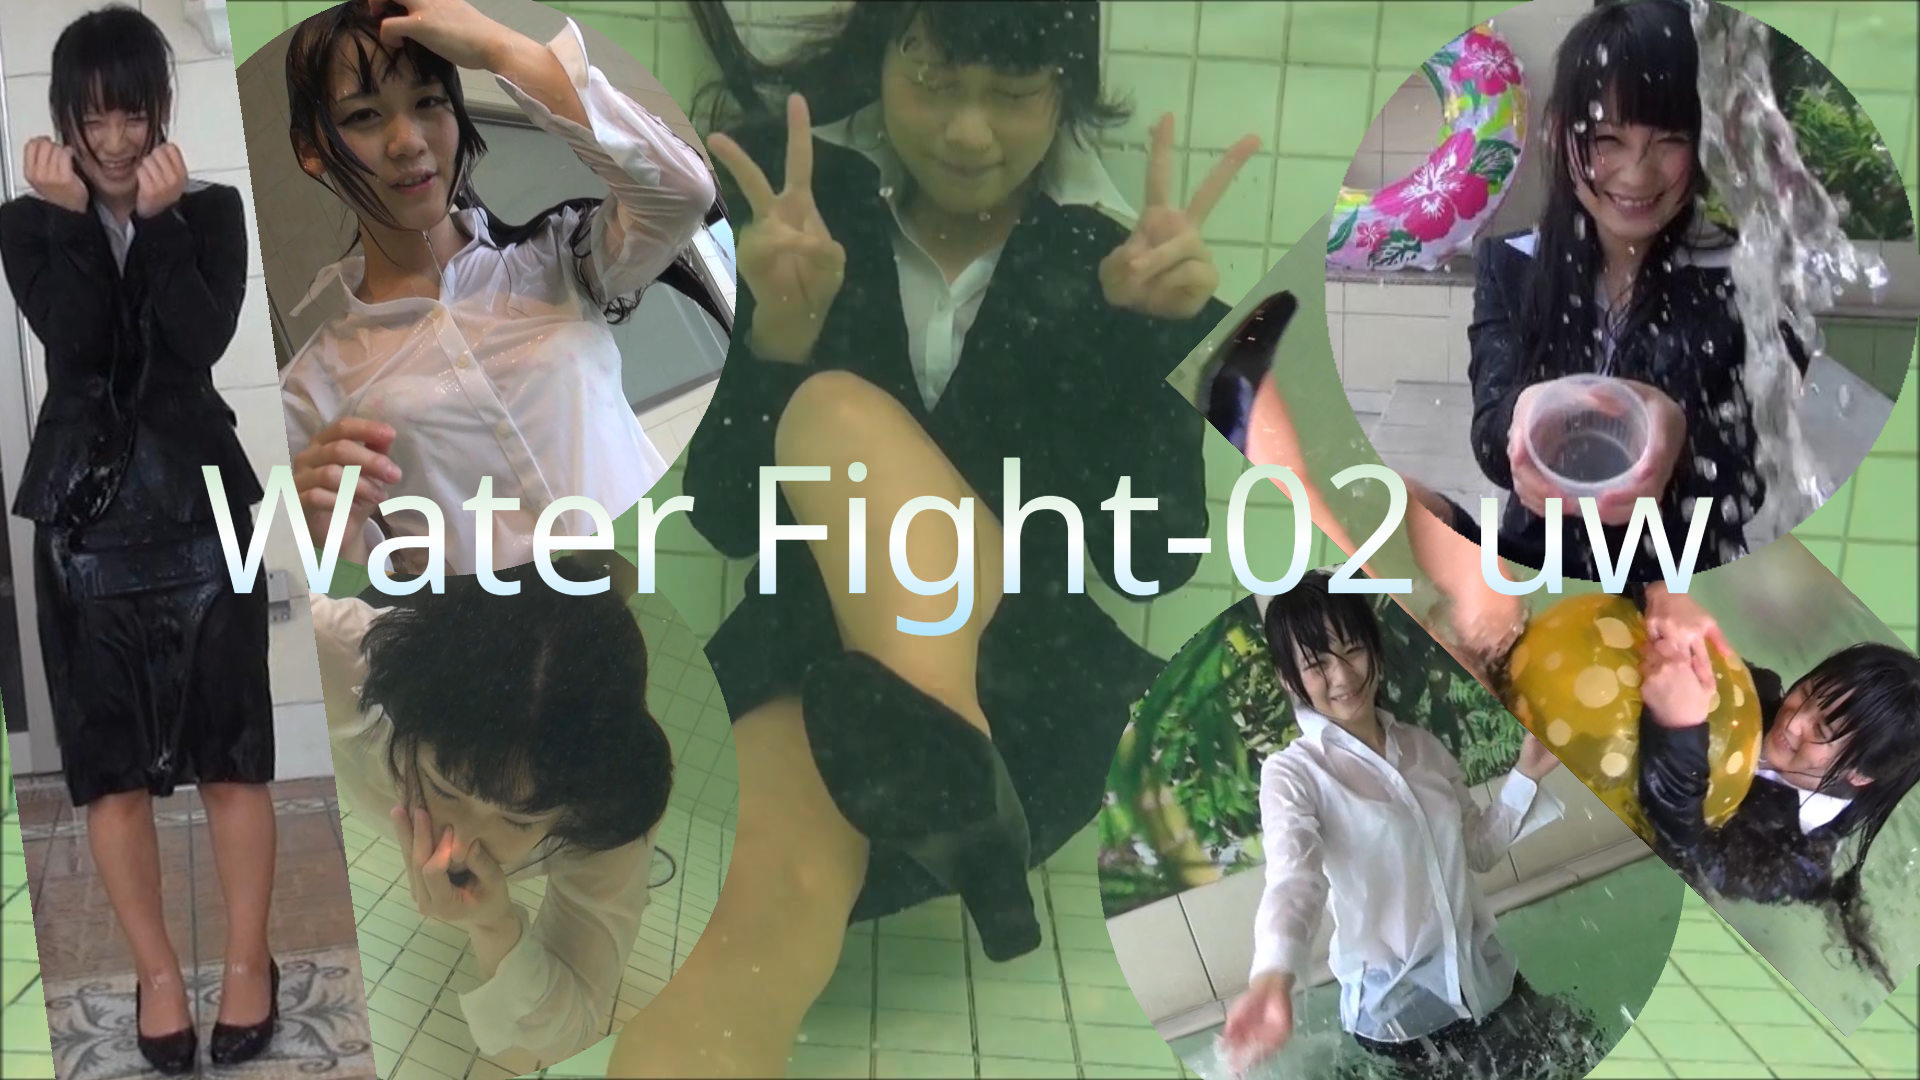 WaterFight-02 uw